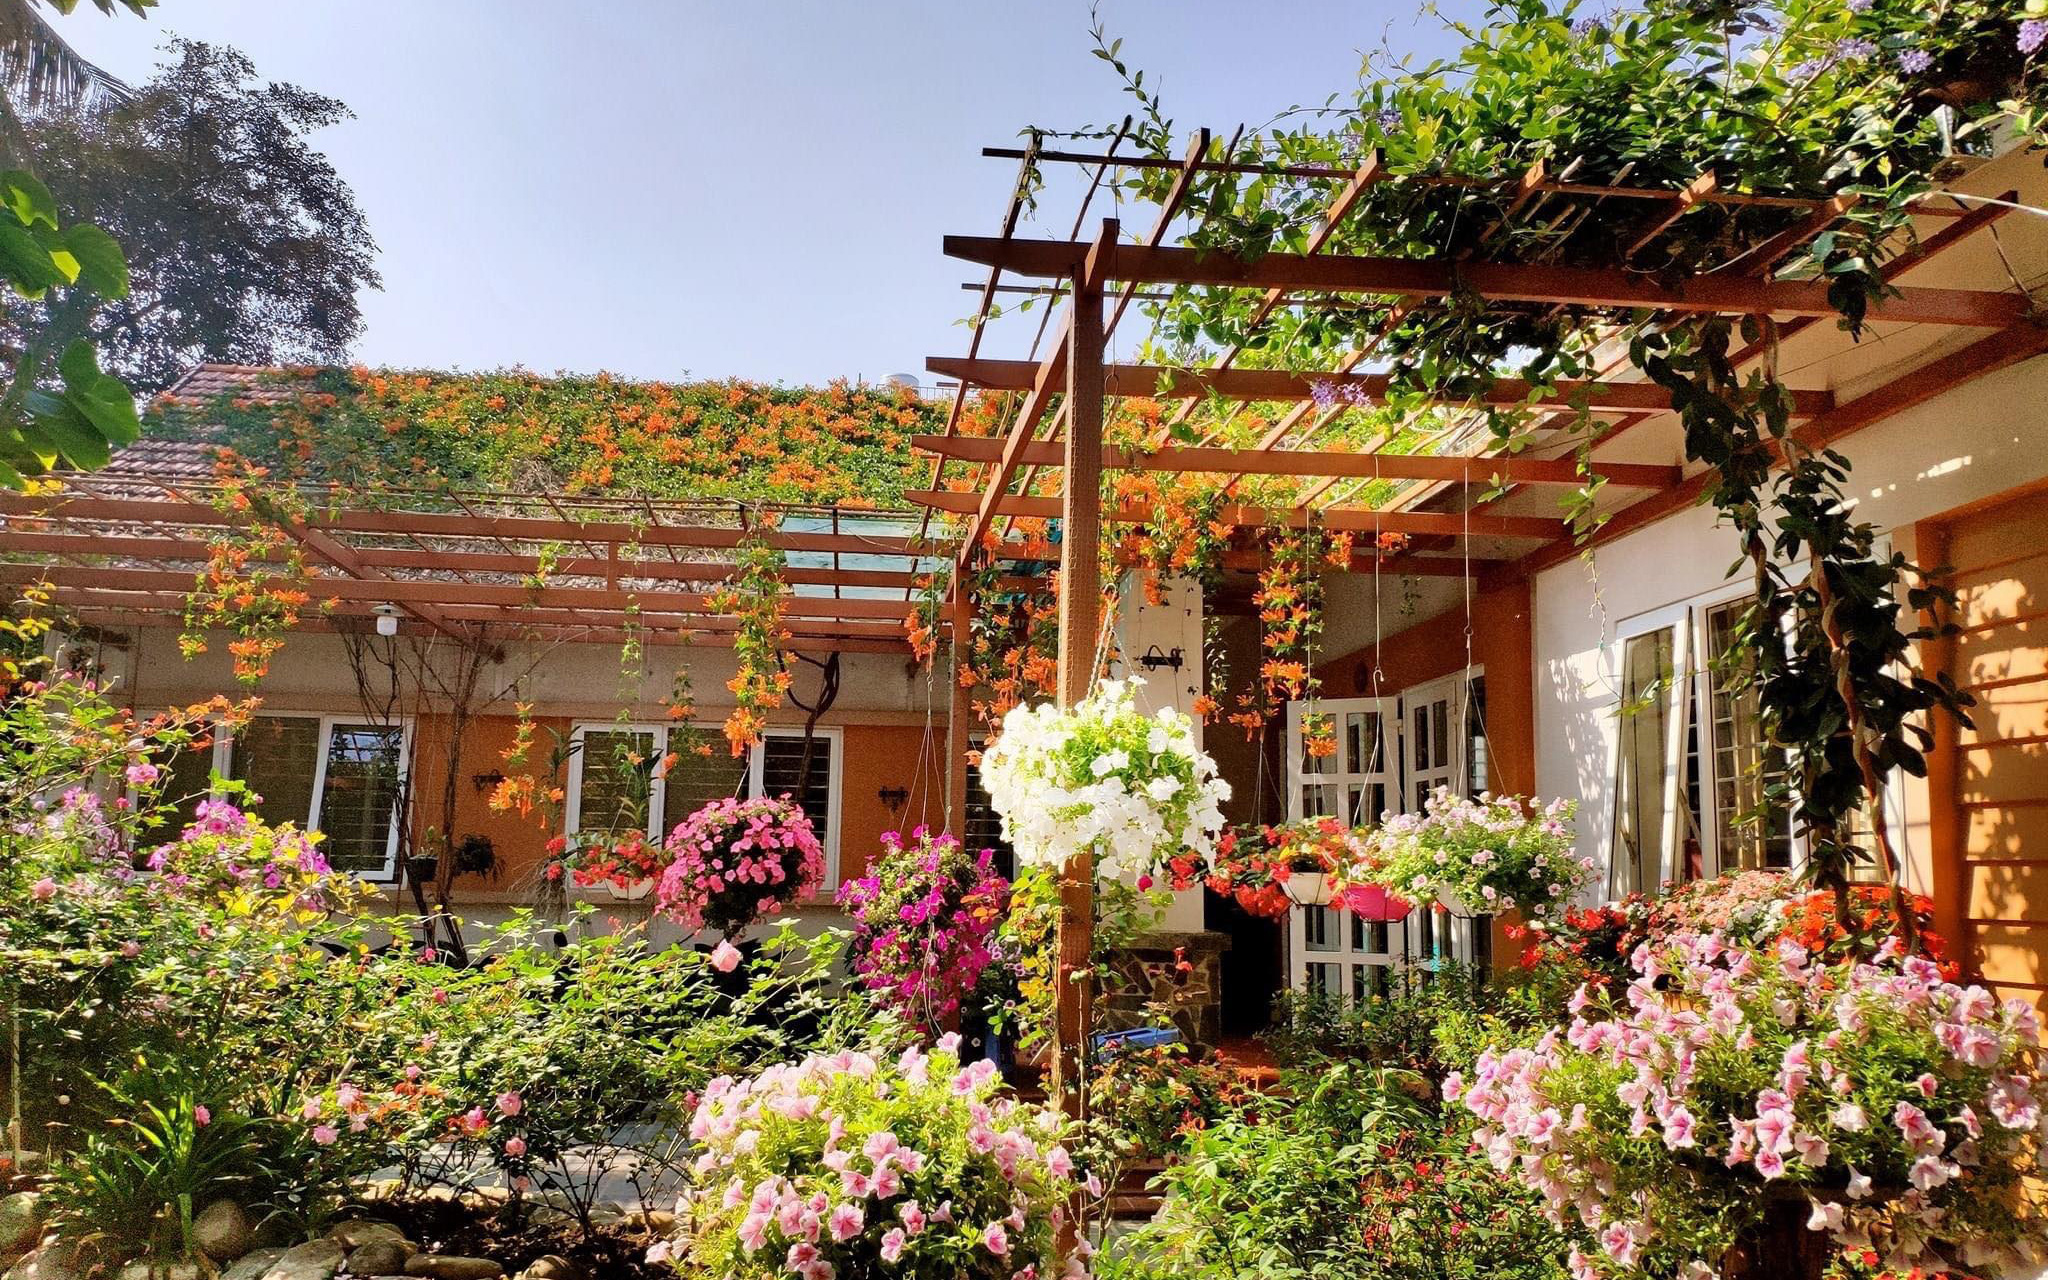 Căn nhà vườn vạn người mơ ước của người chồng chăm chỉ cuốc đất cho vợ phủ kín hoa ở TP. Điện Biên